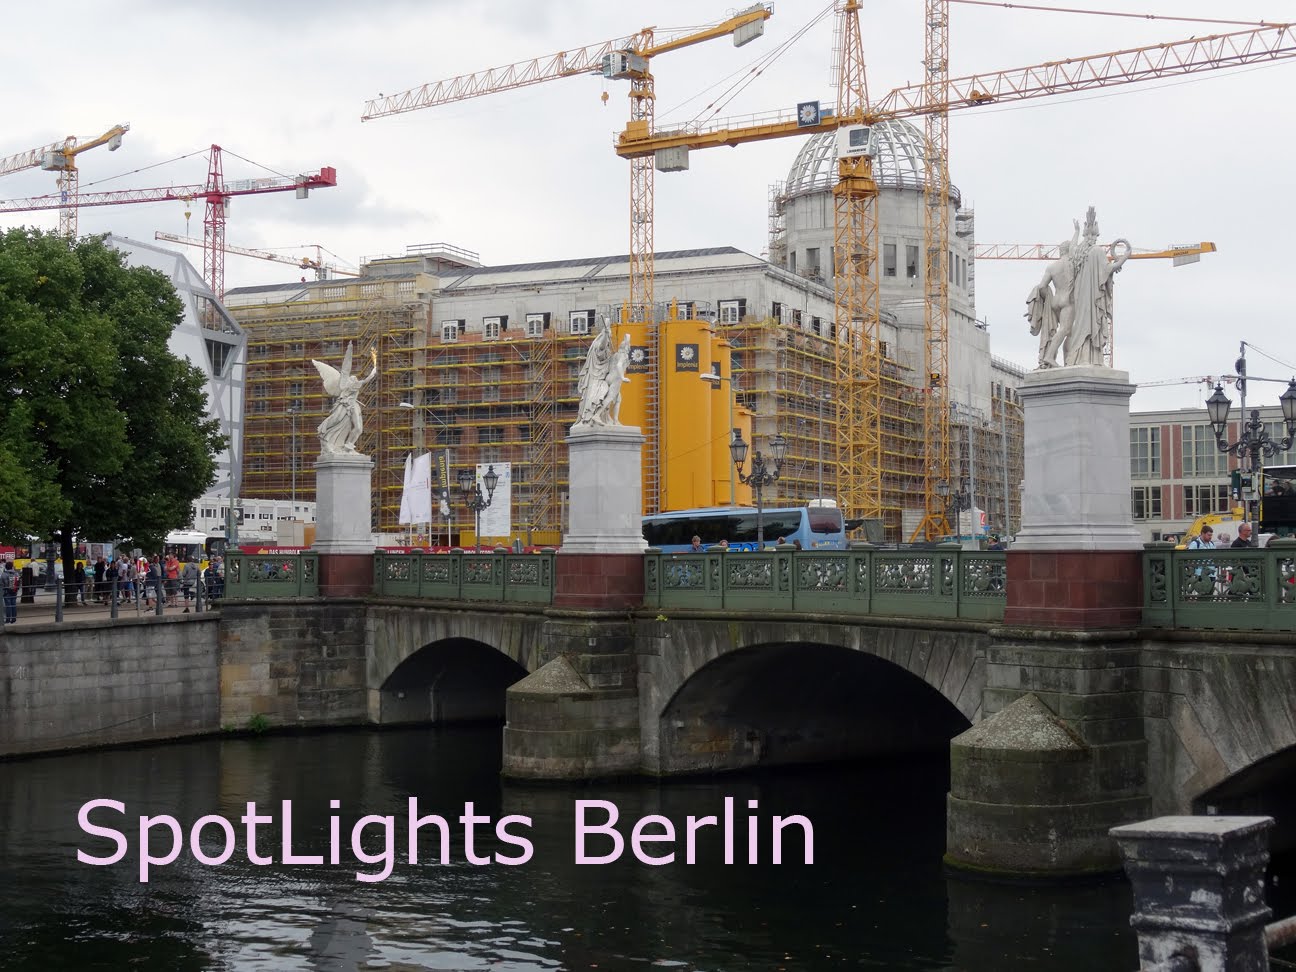 SpotLights Berlin